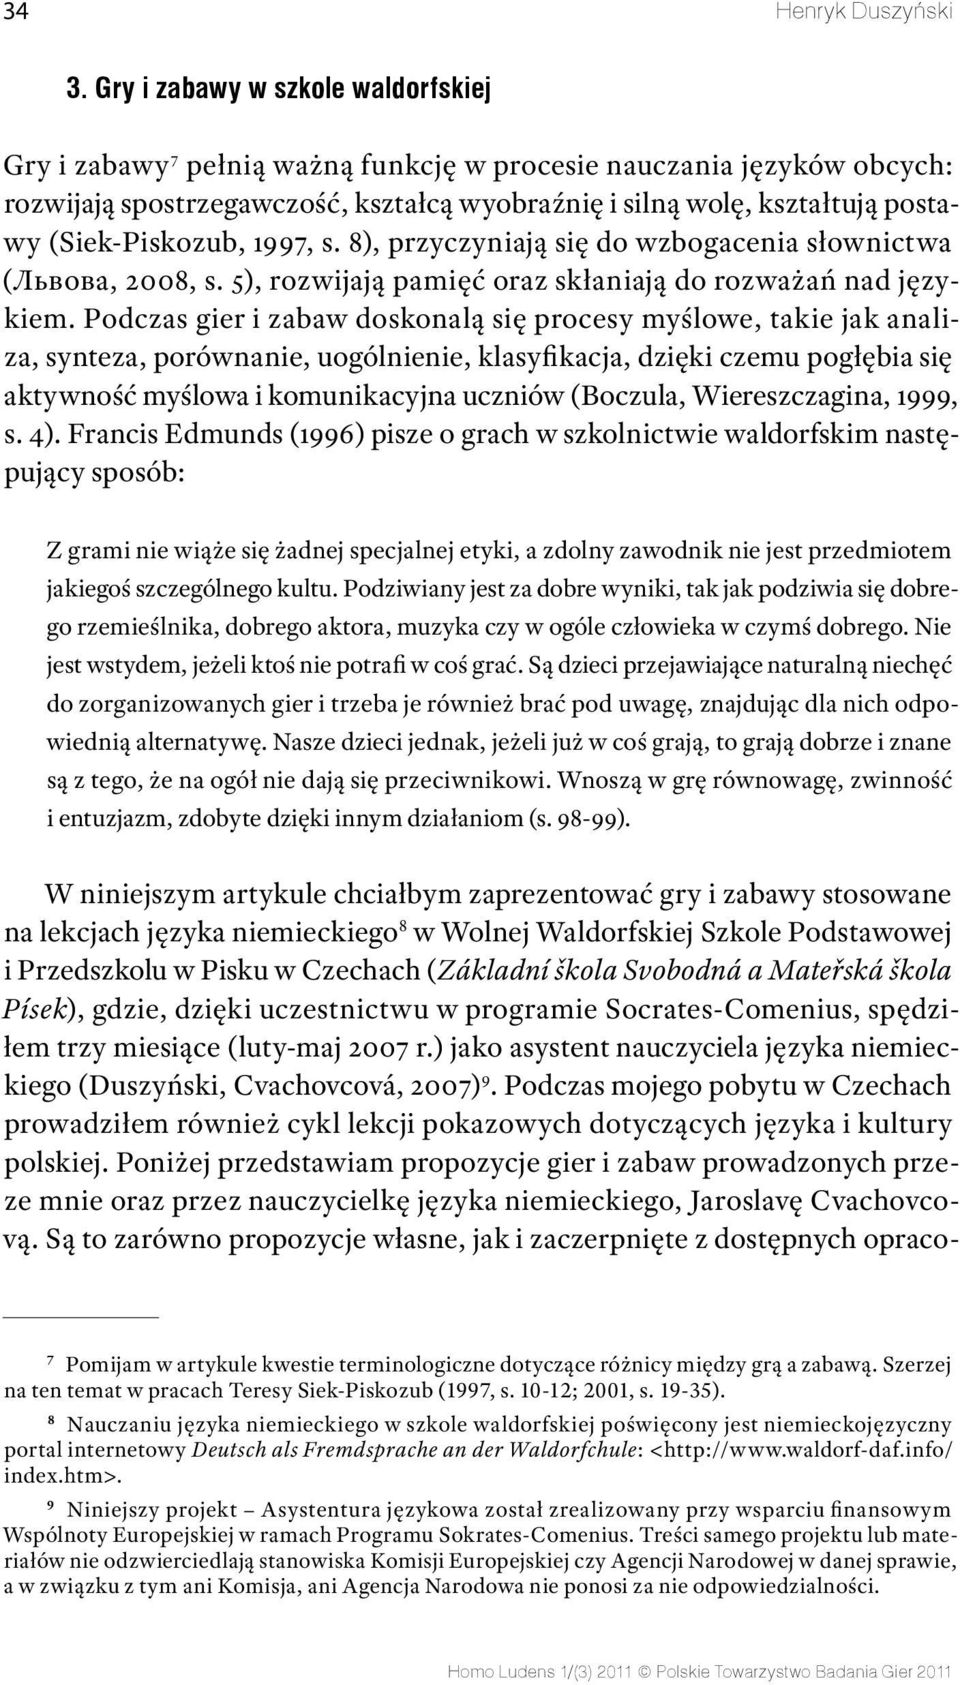 (Siek-Piskozub, 1997, s. 8), przyczyniają się do wzbogacenia słownictwa (Львова, 2008, s. 5), rozwijają pamięć oraz skłaniają do rozważań nad językiem.